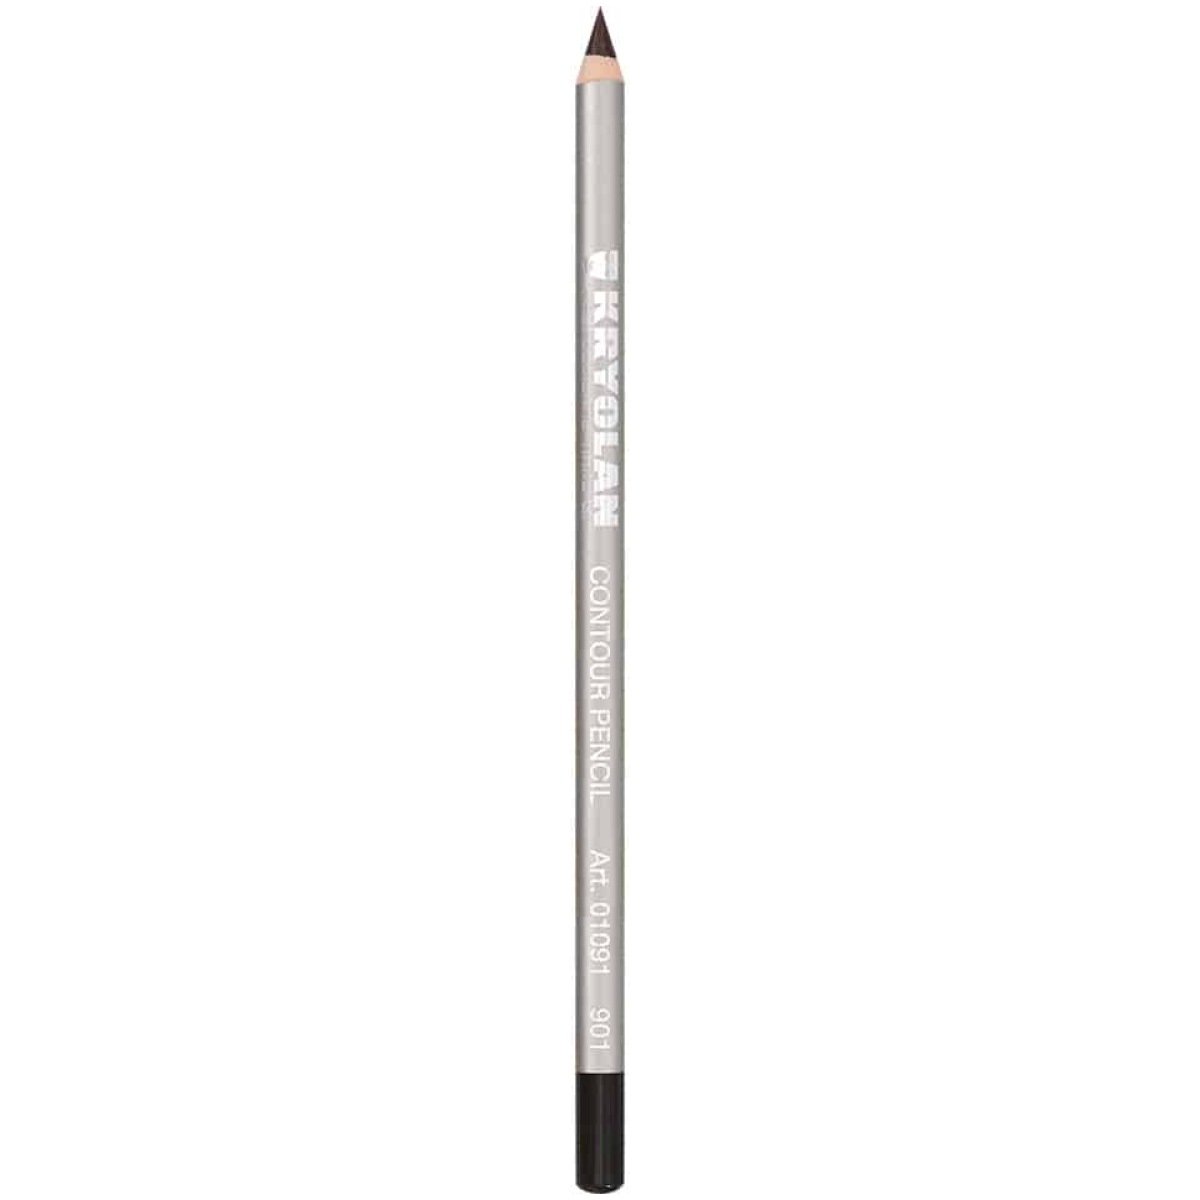 Kryolan Contour Pencil 901 Dark Brown 17.5Cm